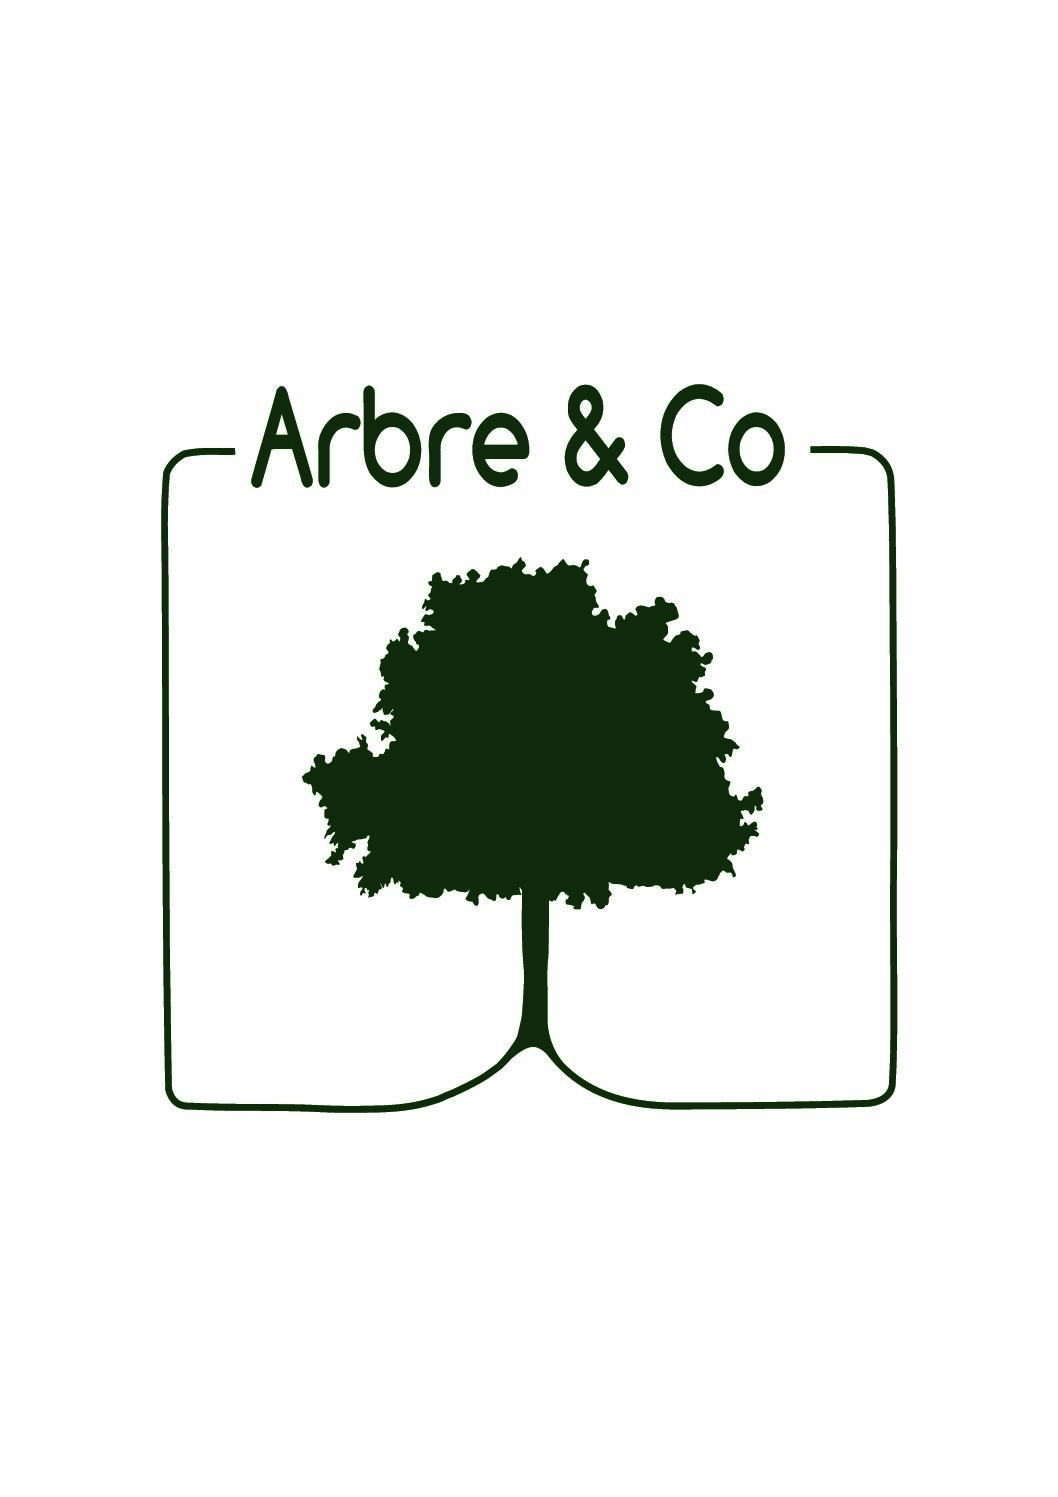 Arbre & Co